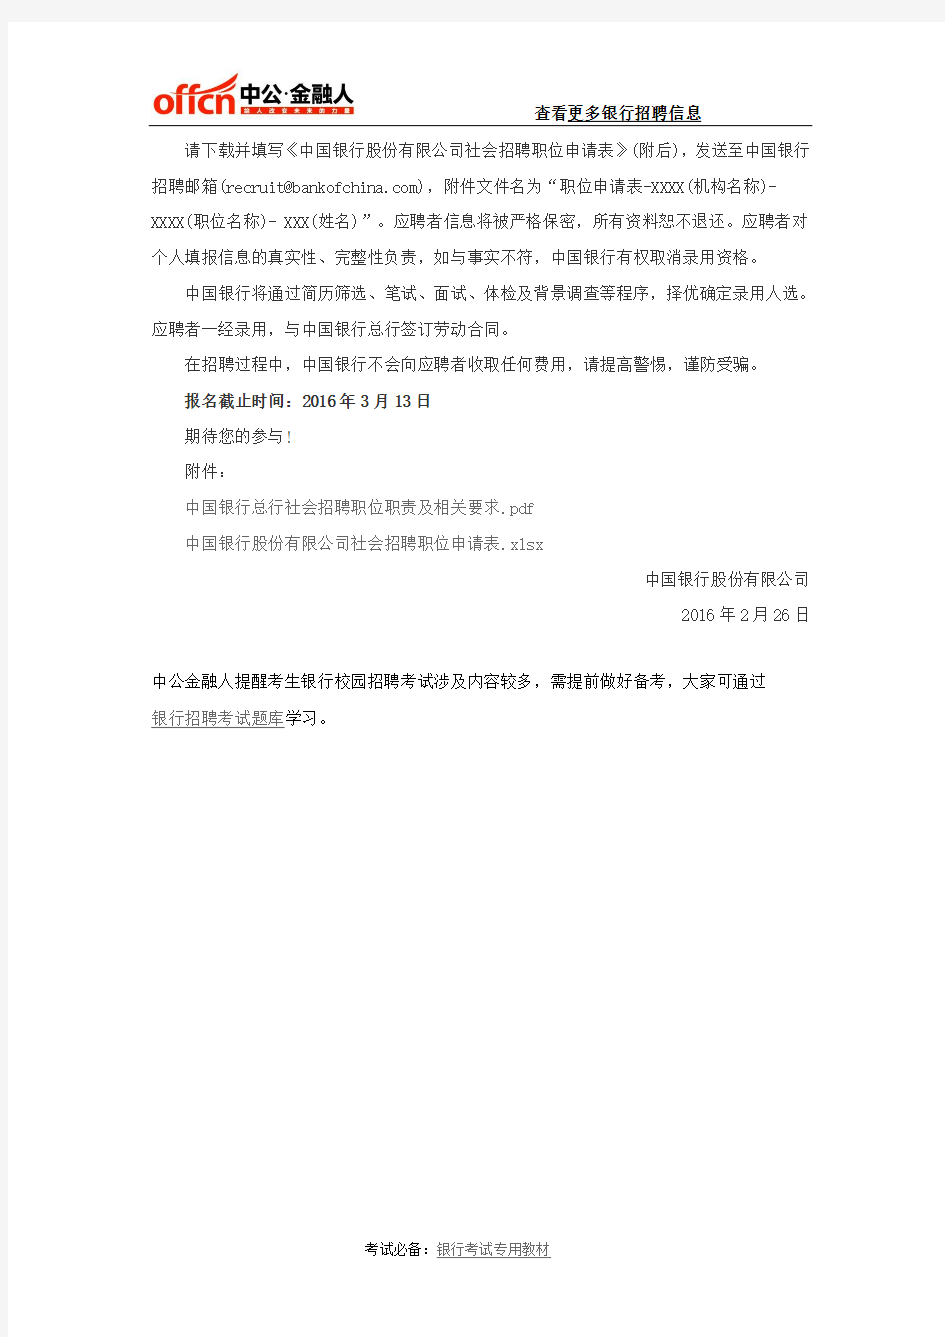 中国银行总行社会招聘公告